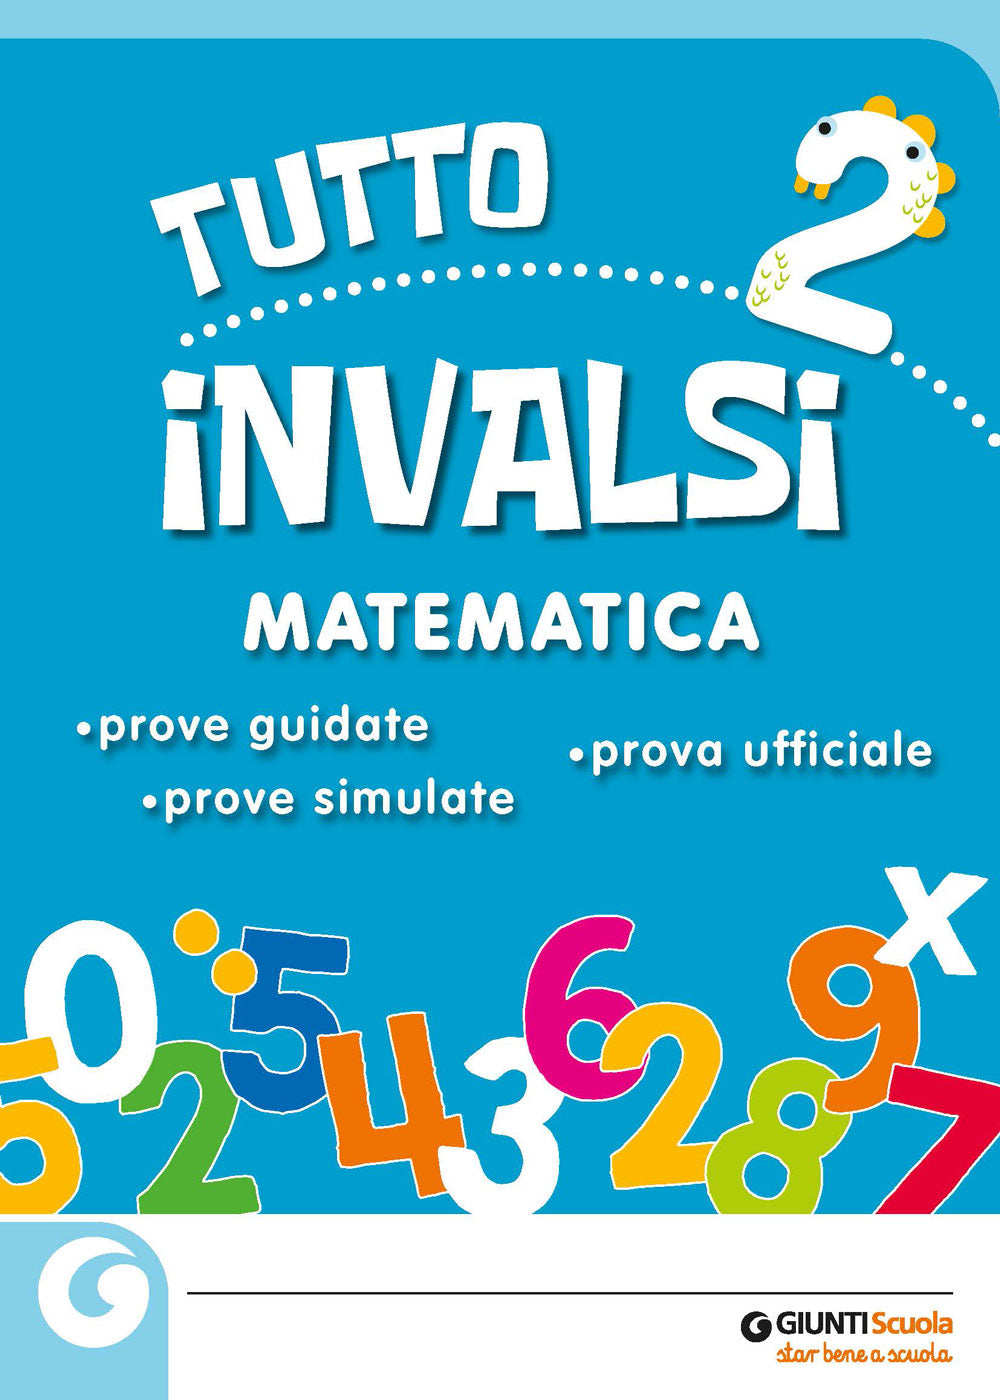 Tutto INVALSI - Matematica 2